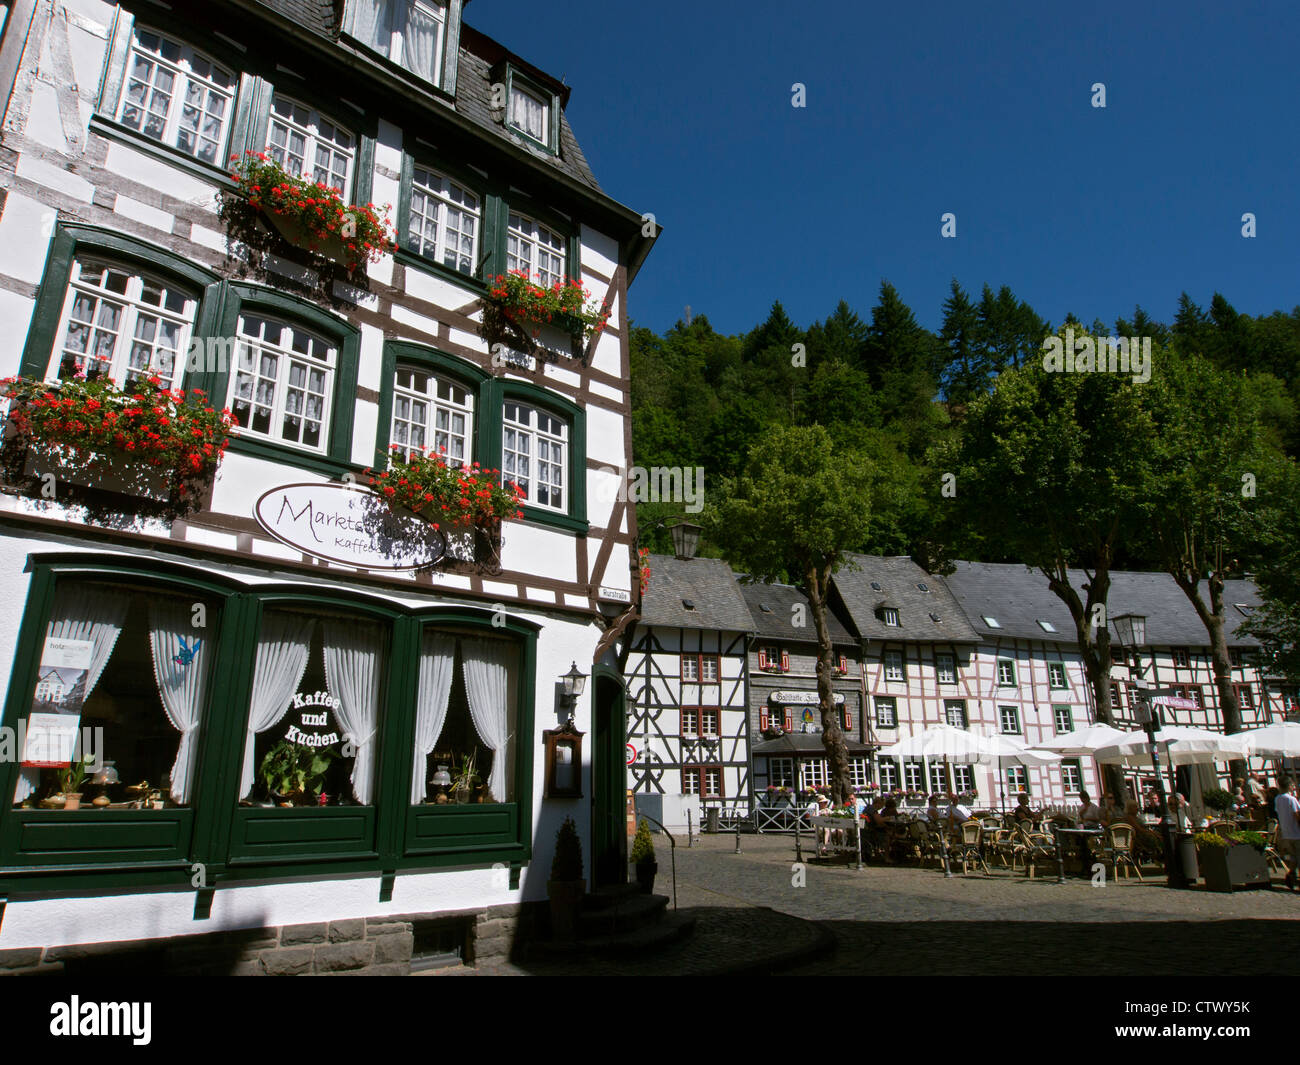 Voir d'anciennes maisons à colombages dans le village historique de Monschau dans la région de l'Eifel de l'Allemagne Banque D'Images